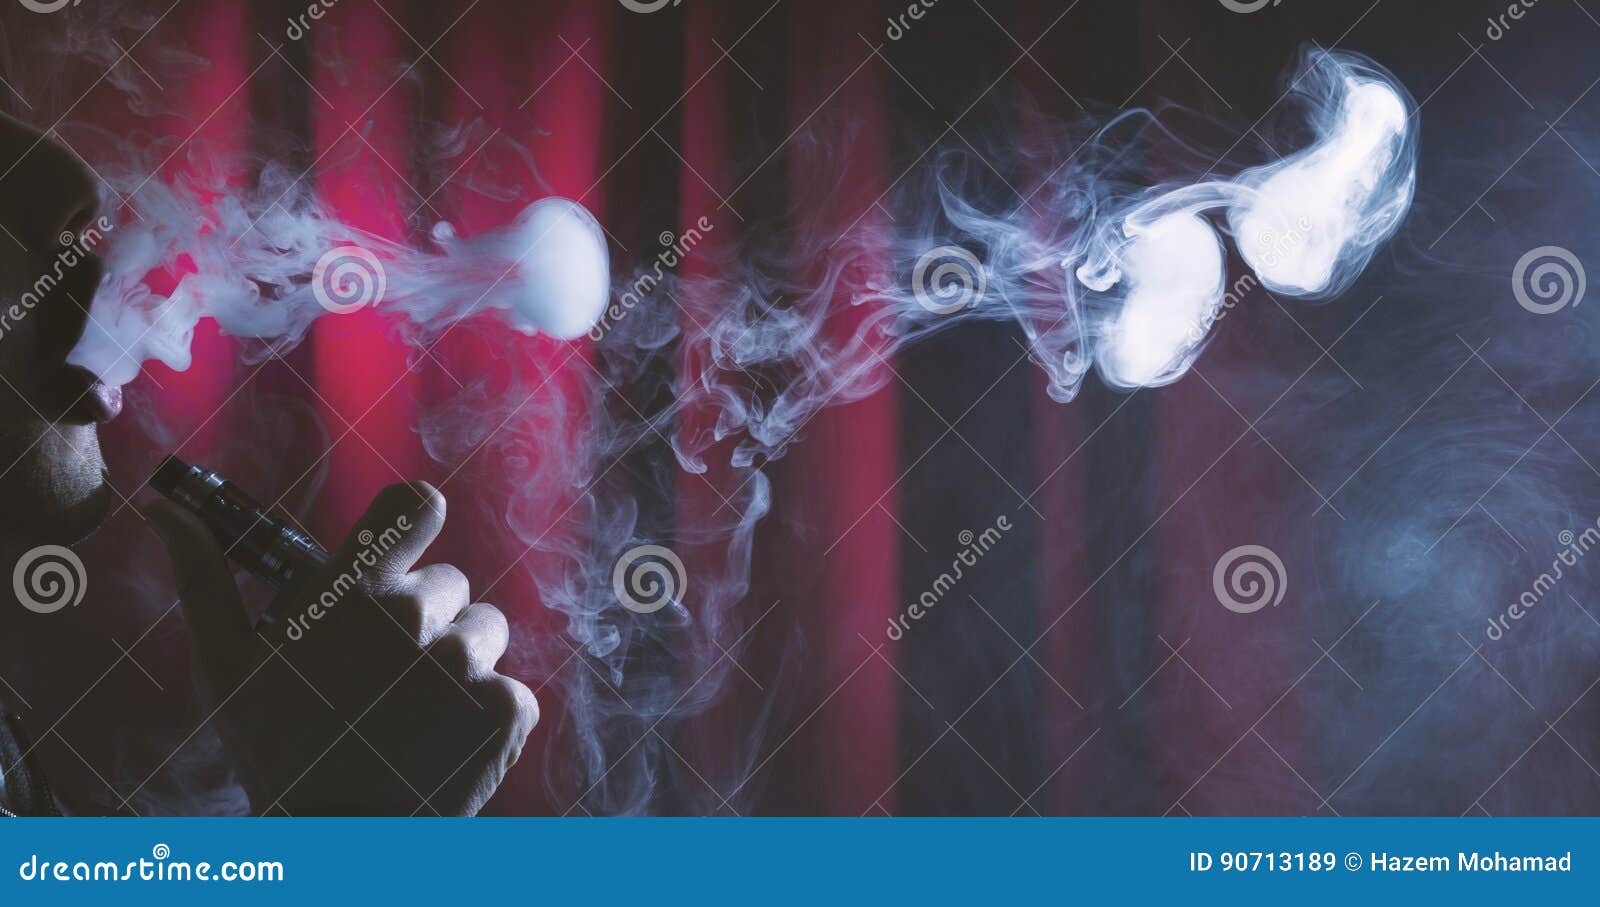 年轻在黑暗的背景的人vaping的云彩. 拿着电子香烟或e香烟与云彩的一个人在深红背景